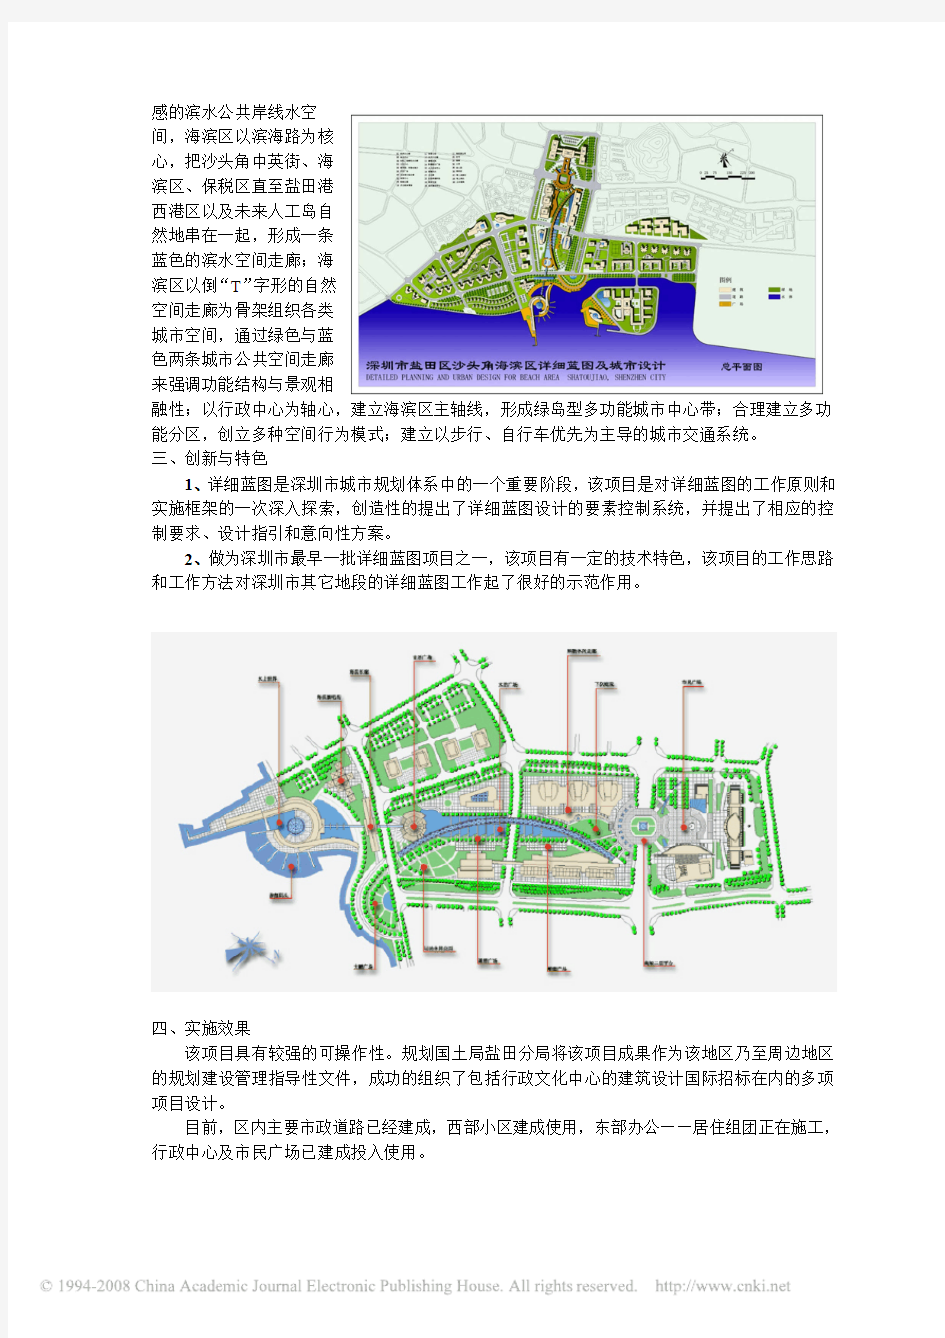 深圳盐田沙头角海滨区详细蓝图及城市设计